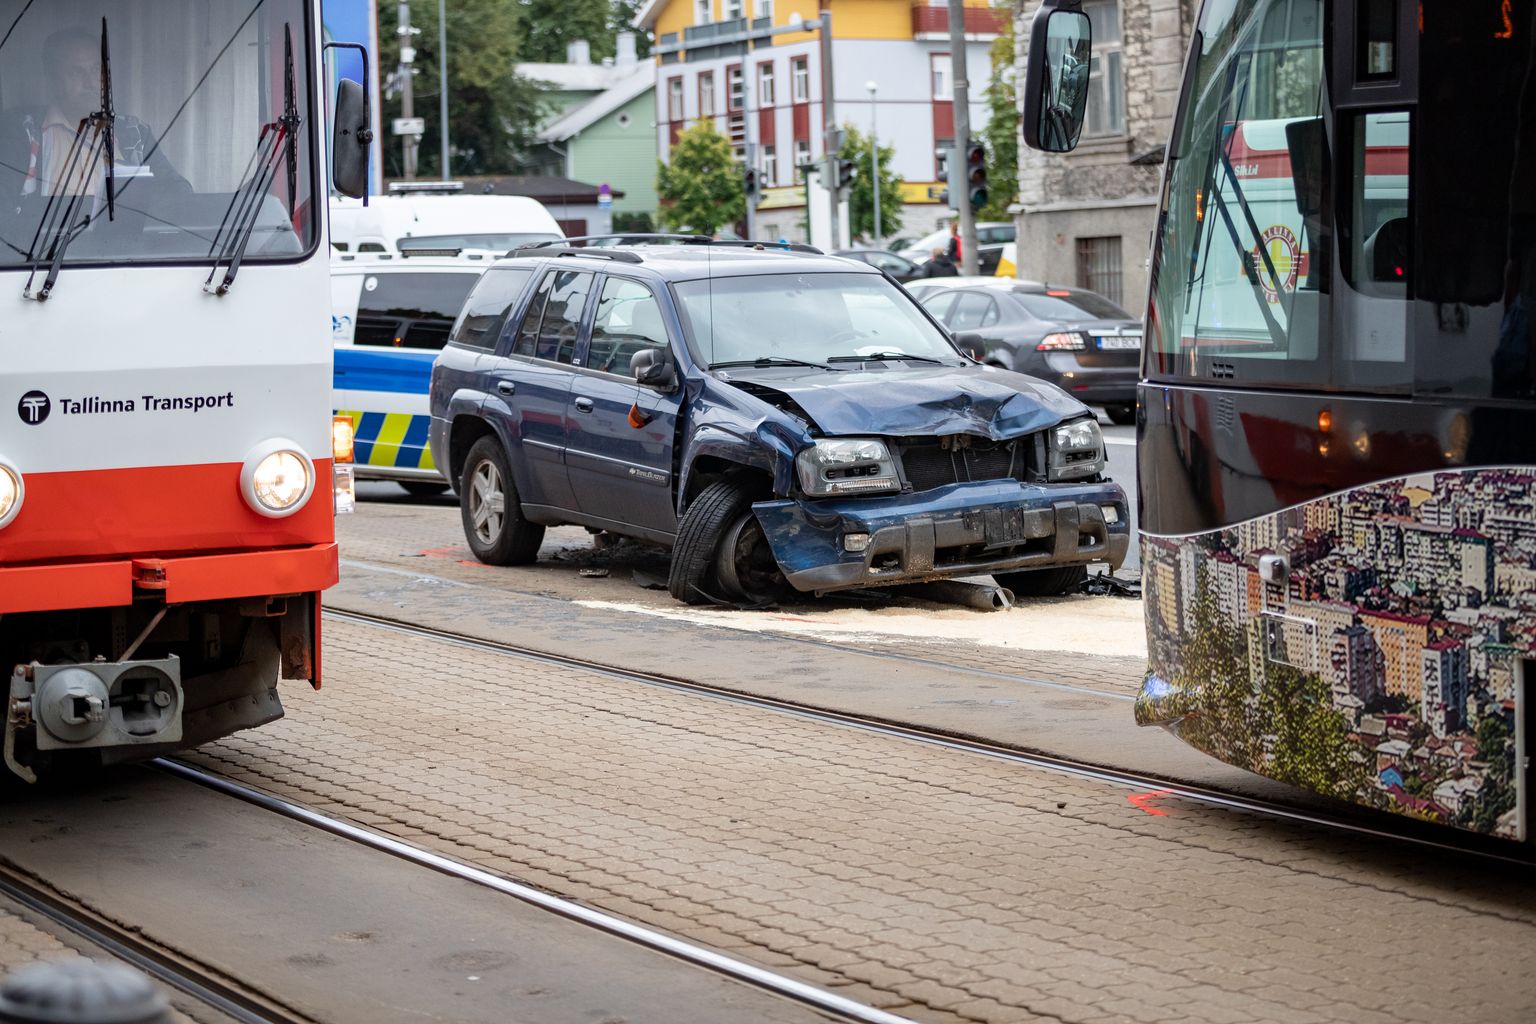 Liiklusõnnetus takistab trammiliiklust Tallinna kesklinnas. Arhiivipilt.